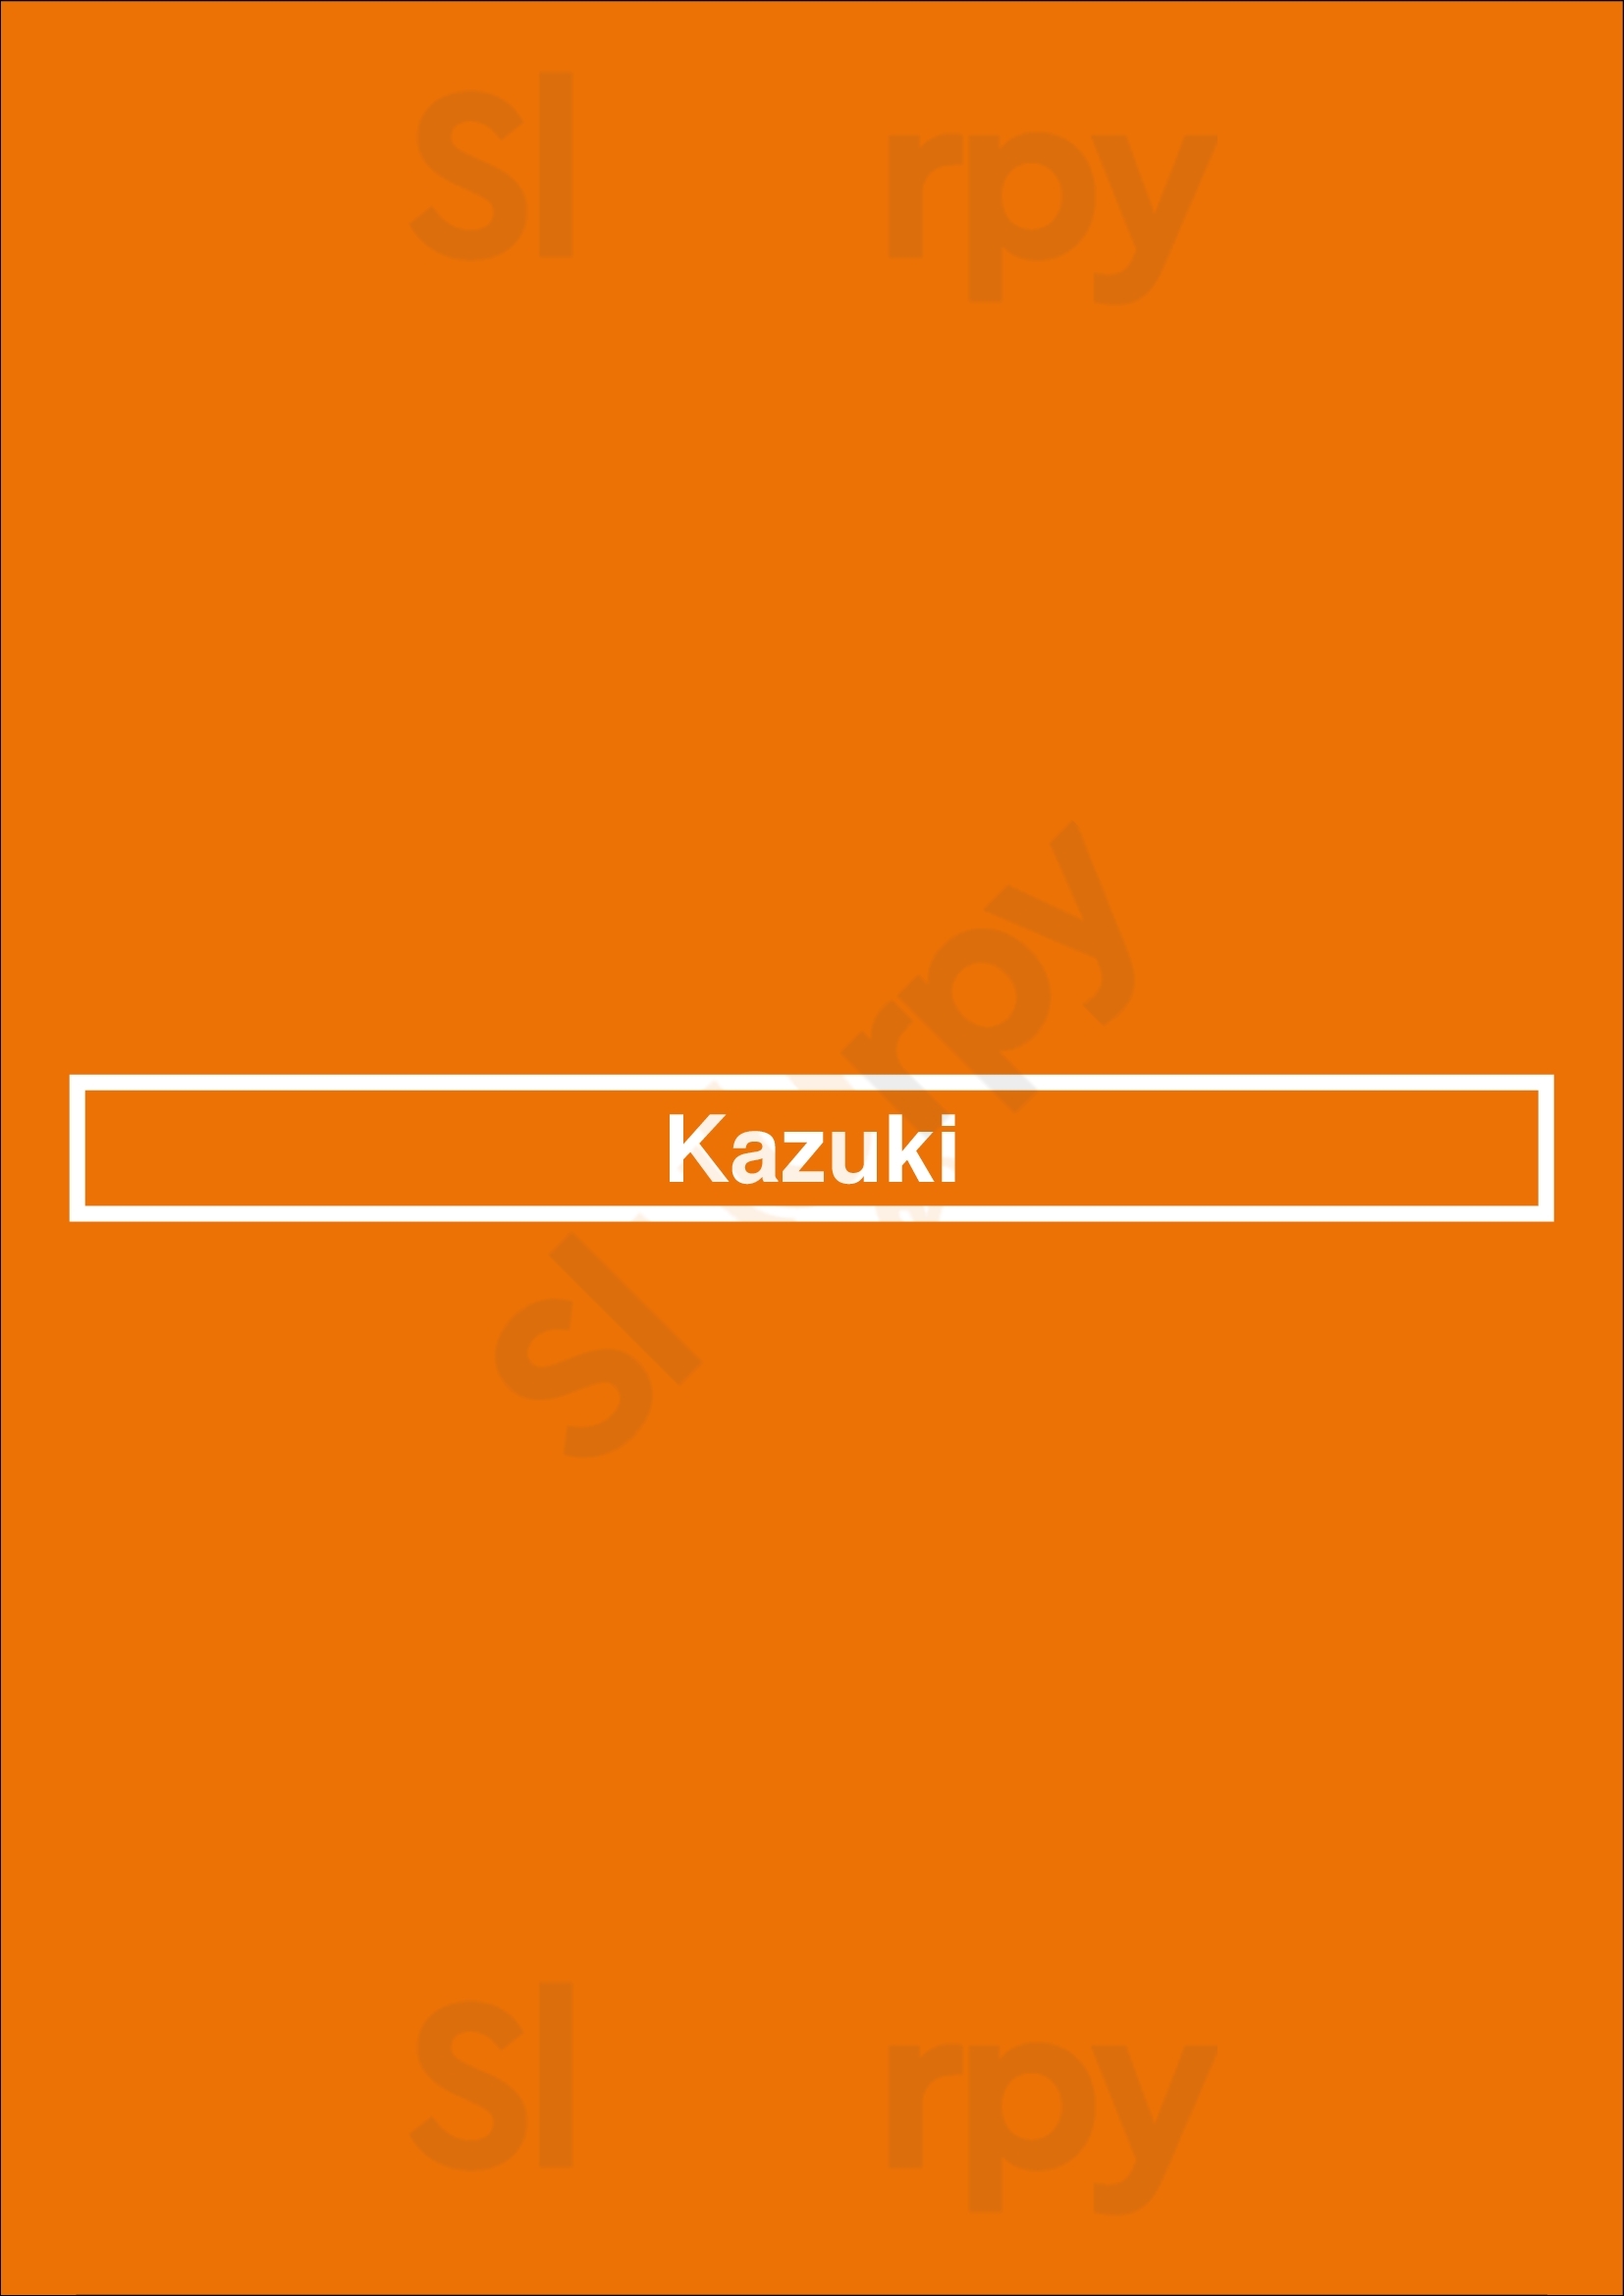 Kazuki Paris Menu - 1